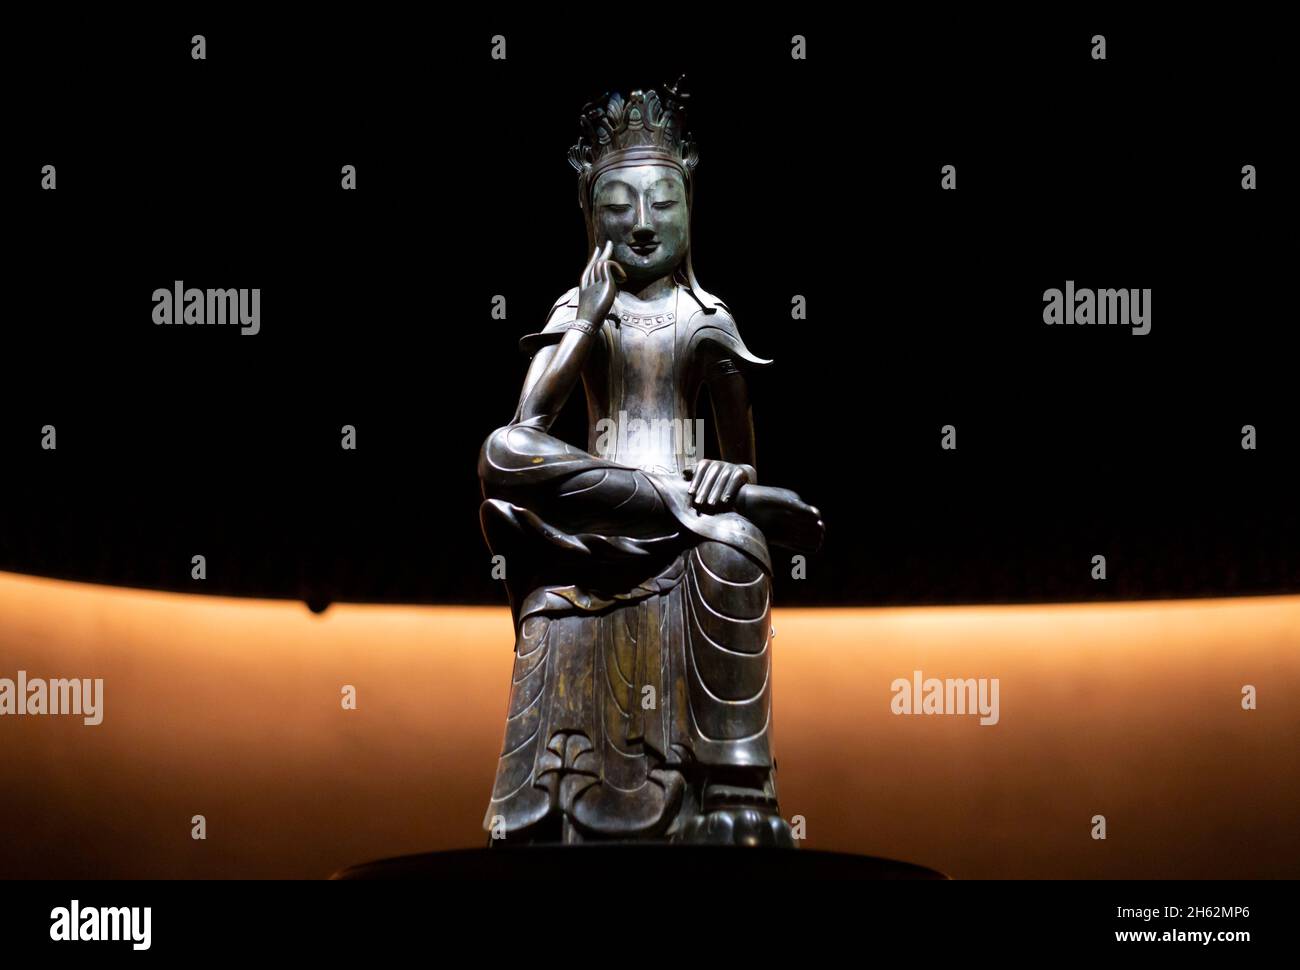 Séoul, Corée du Sud.11 novembre 2021.Un Bodhisattva pensif (fin du 6e siècle), Trésor national 78 de Corée du Sud vu exposé au Musée national de Corée.le musée a ouvert un espace d'exposition permanent nommé "salle de contemplation tranquille" pour deux statues bouddhistes en bronze doré de Bodhisattva pensif (Bangasayusang), qui sont des trésors nationaux.Crédit : SOPA Images Limited/Alamy Live News Banque D'Images